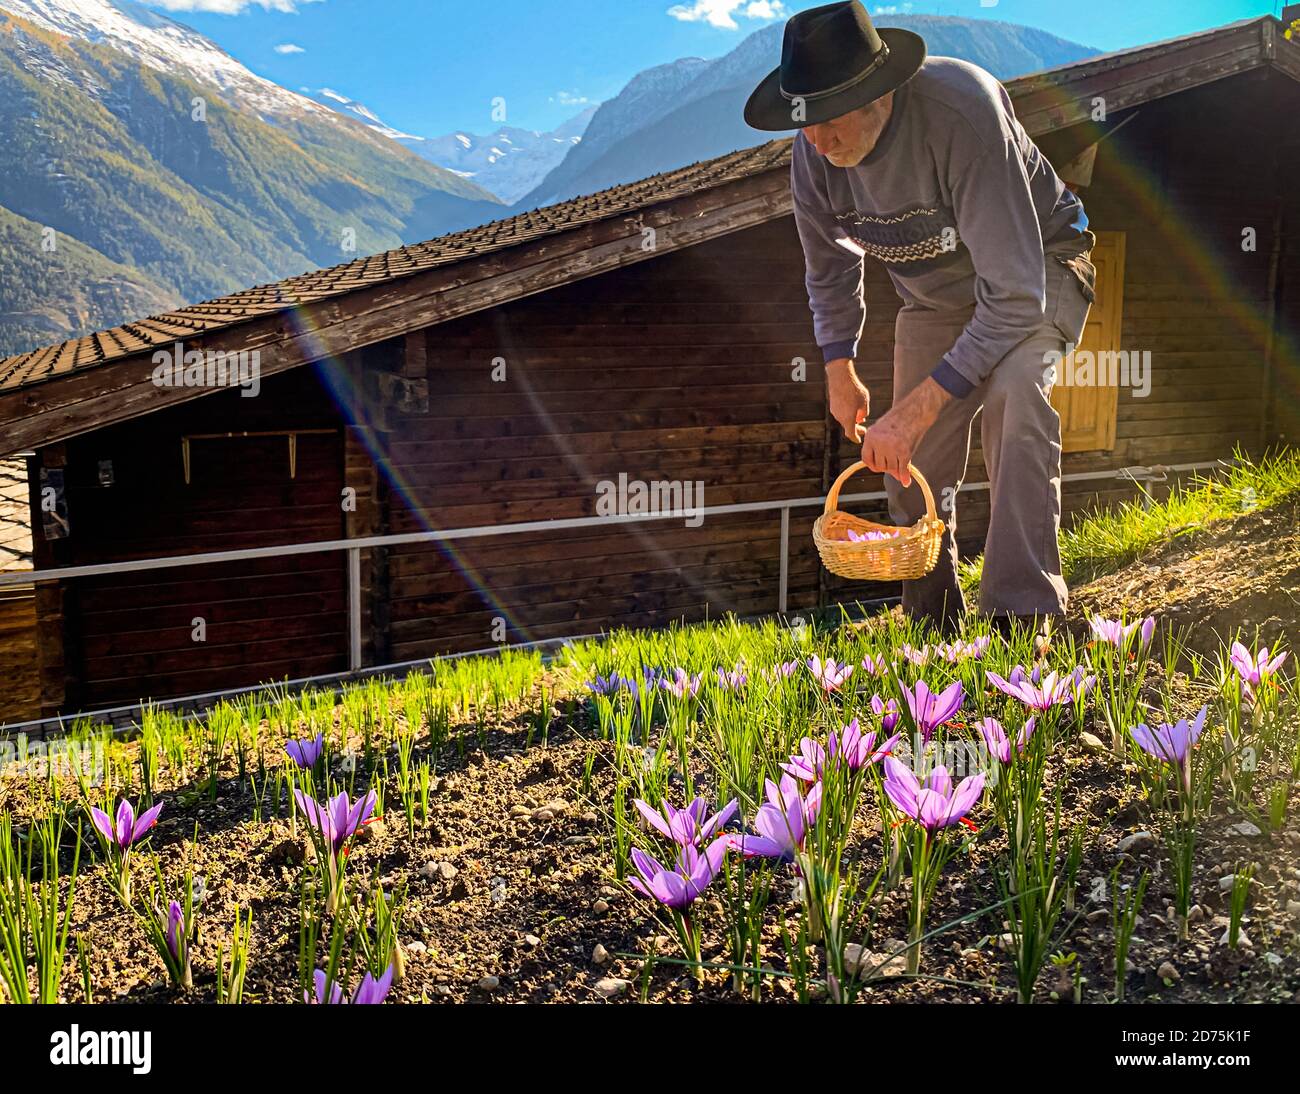 Safranernte und Verarbeitung in Mund, Naters, Schweiz Stockfoto